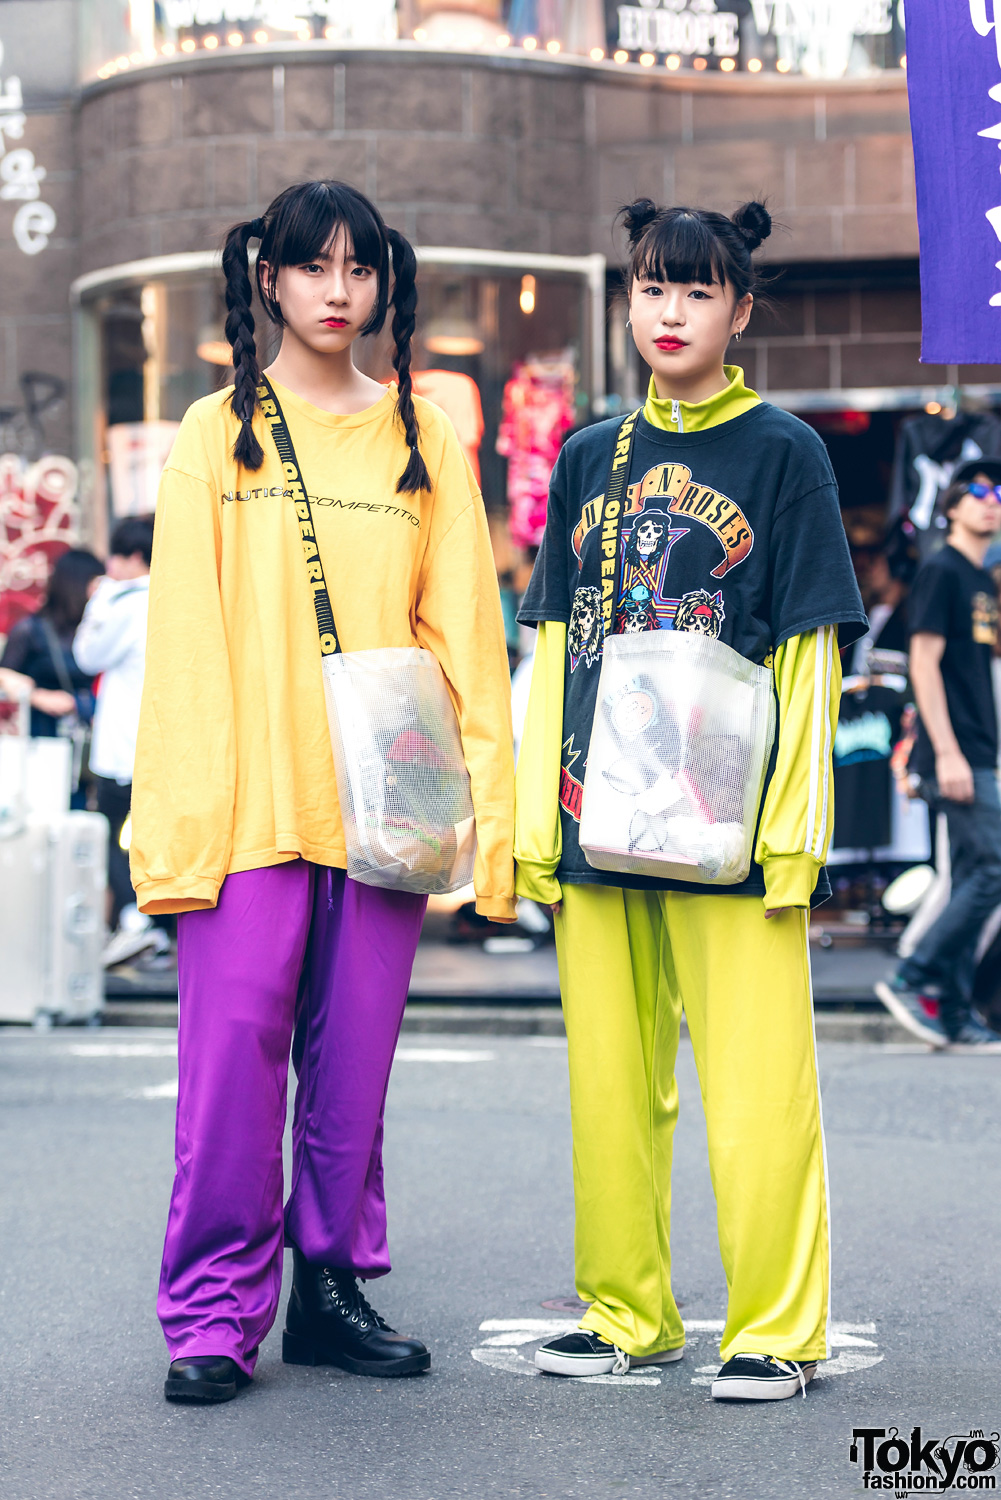 Harajuku Girls in Sporty Streetwear w/ Nautica, Kaka Vaka, Vans, Oh Pearl & Guns N' Roses Tee